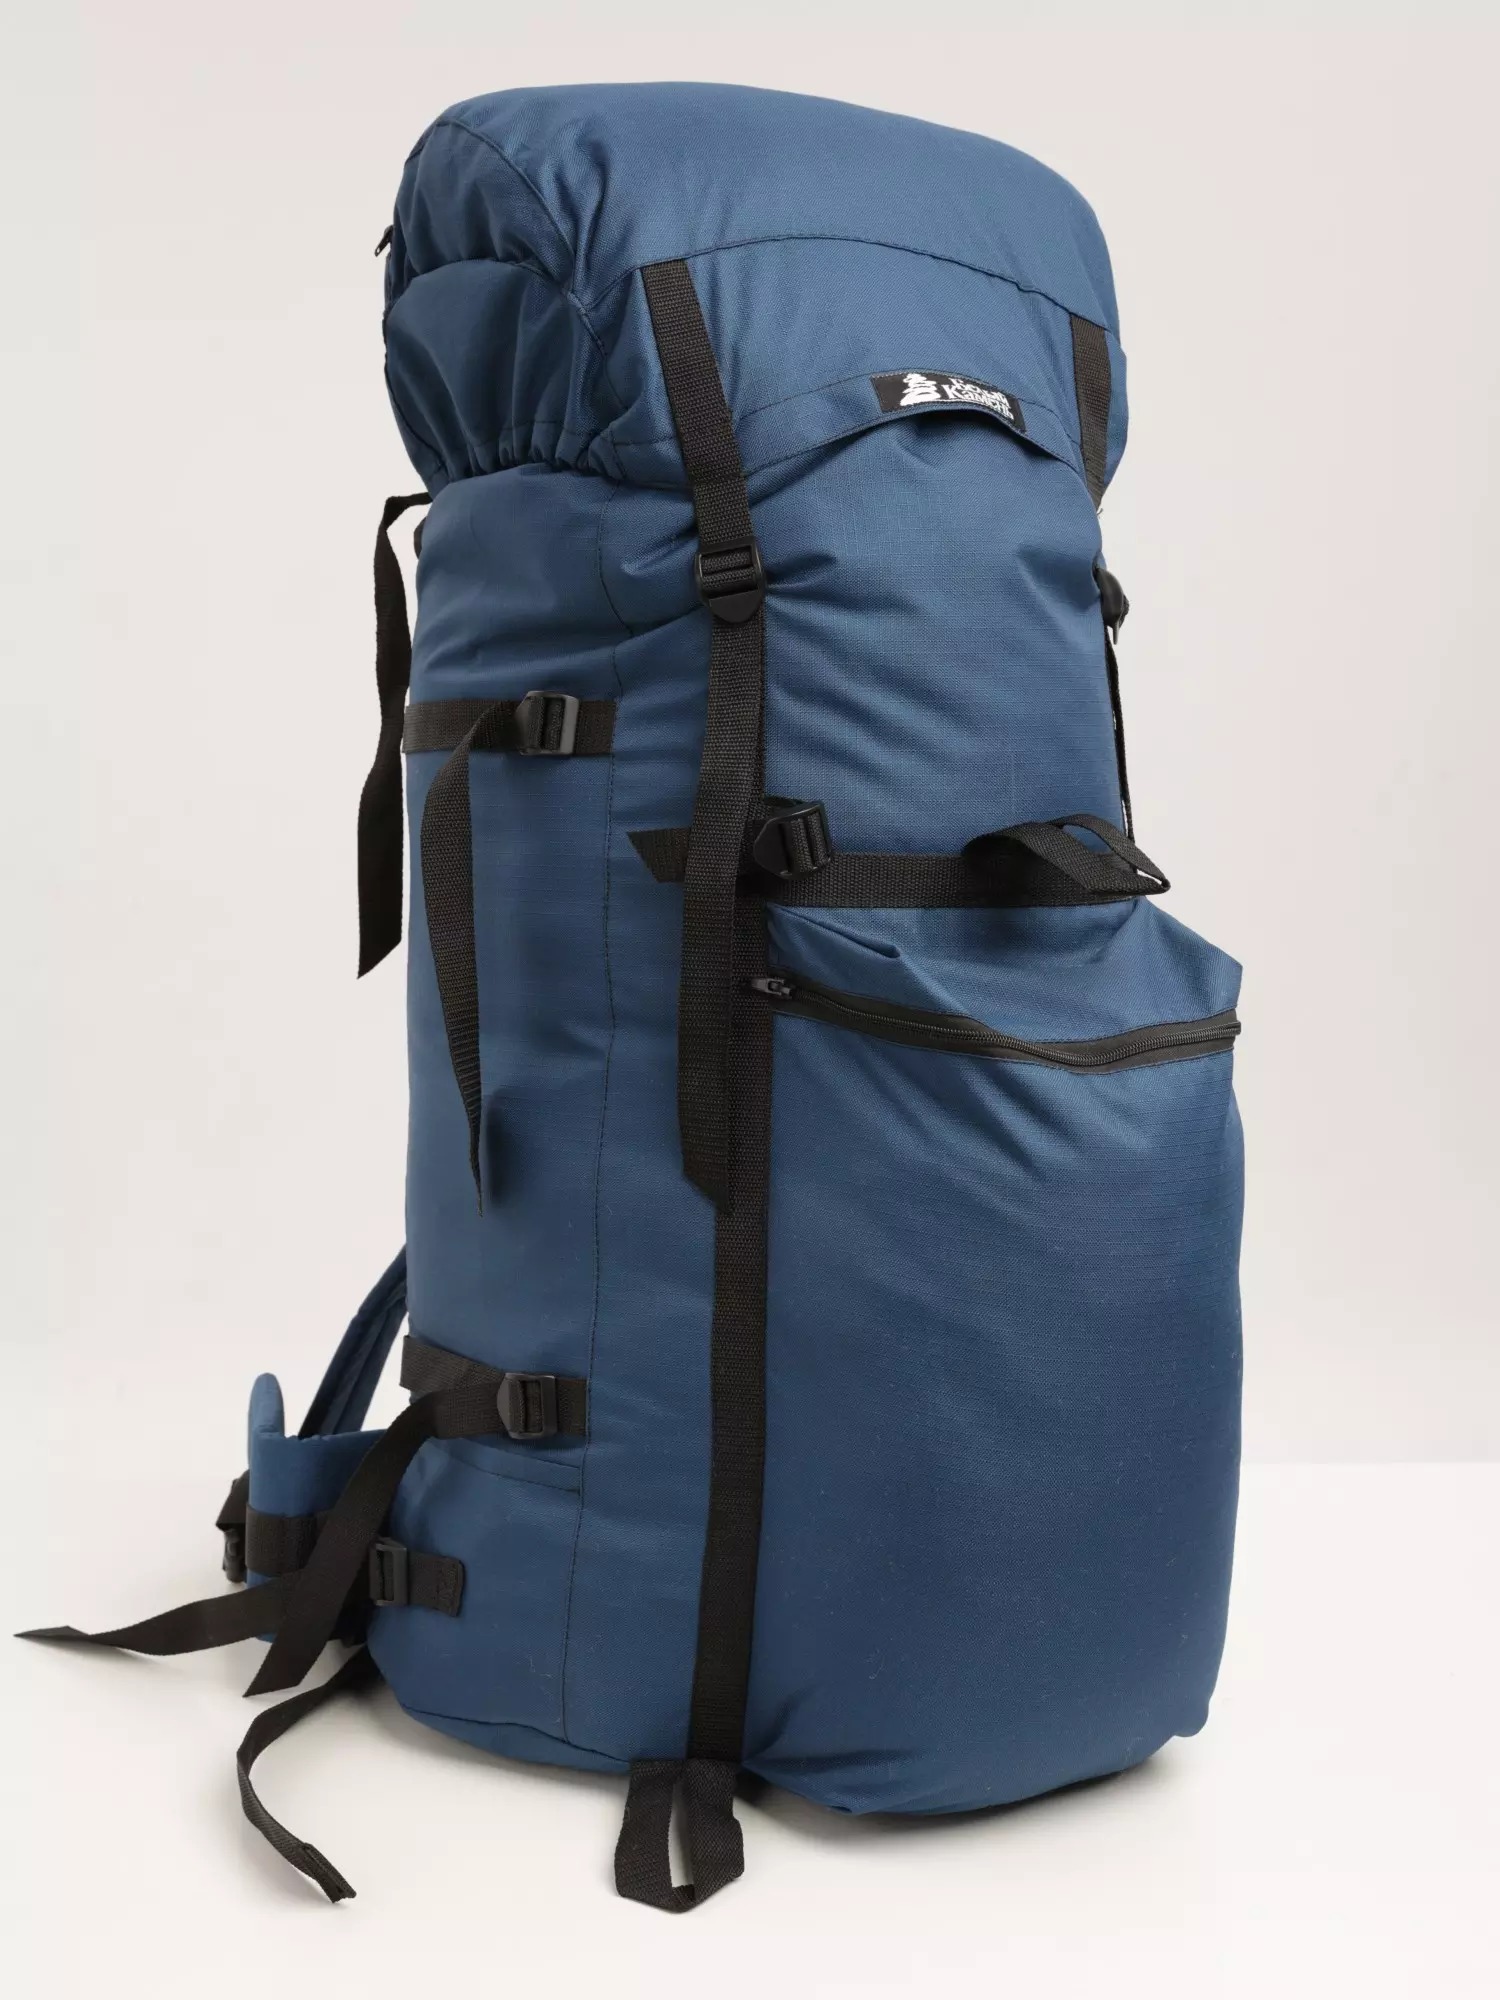 Рюкзак туристический Белый камень Универсал-1 100 л оксфорд 600D ПУ синий